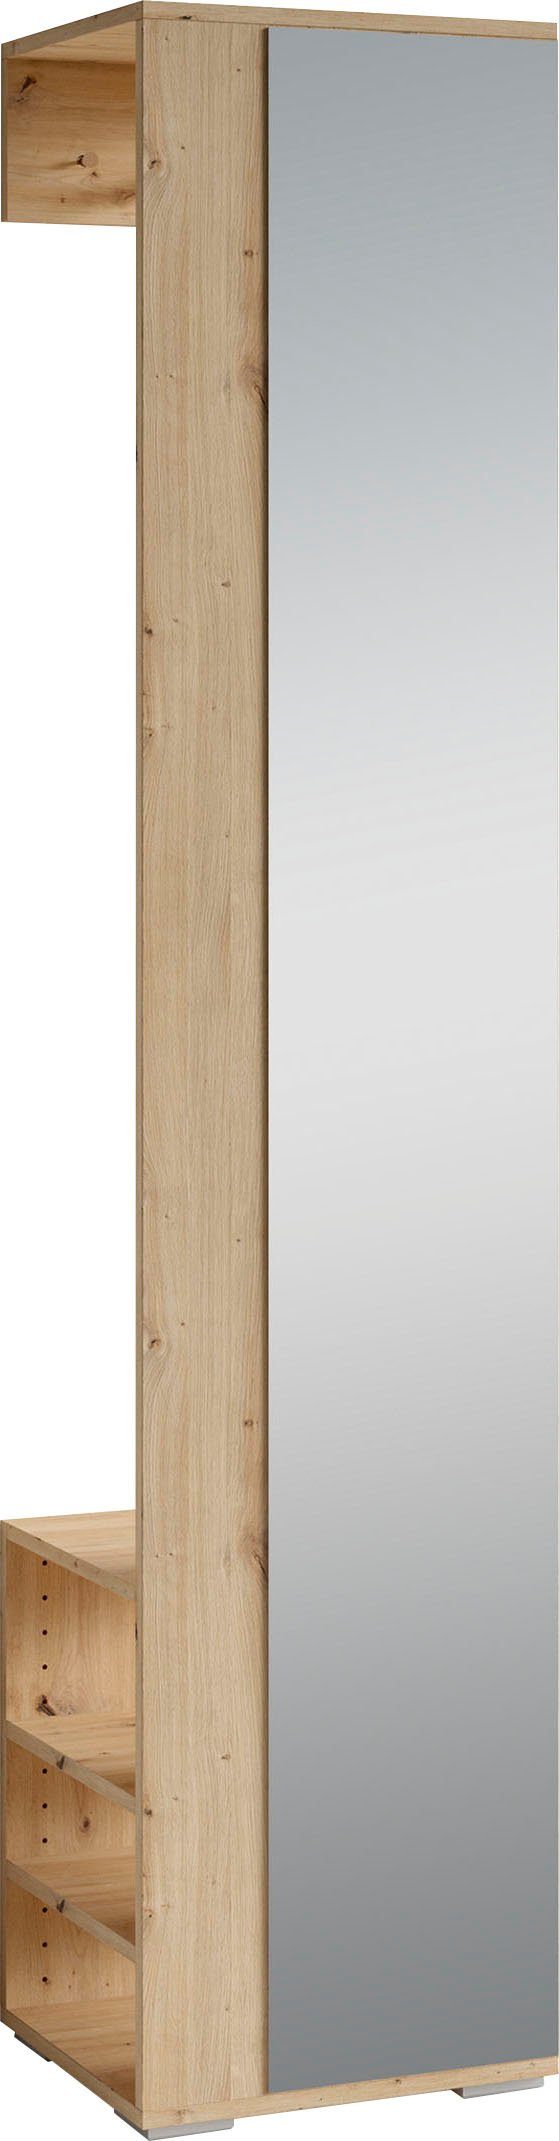 byliving kapstokpaneel ben breedte 40 cm, met spiegel en garderobestang (1 stuk) bruin